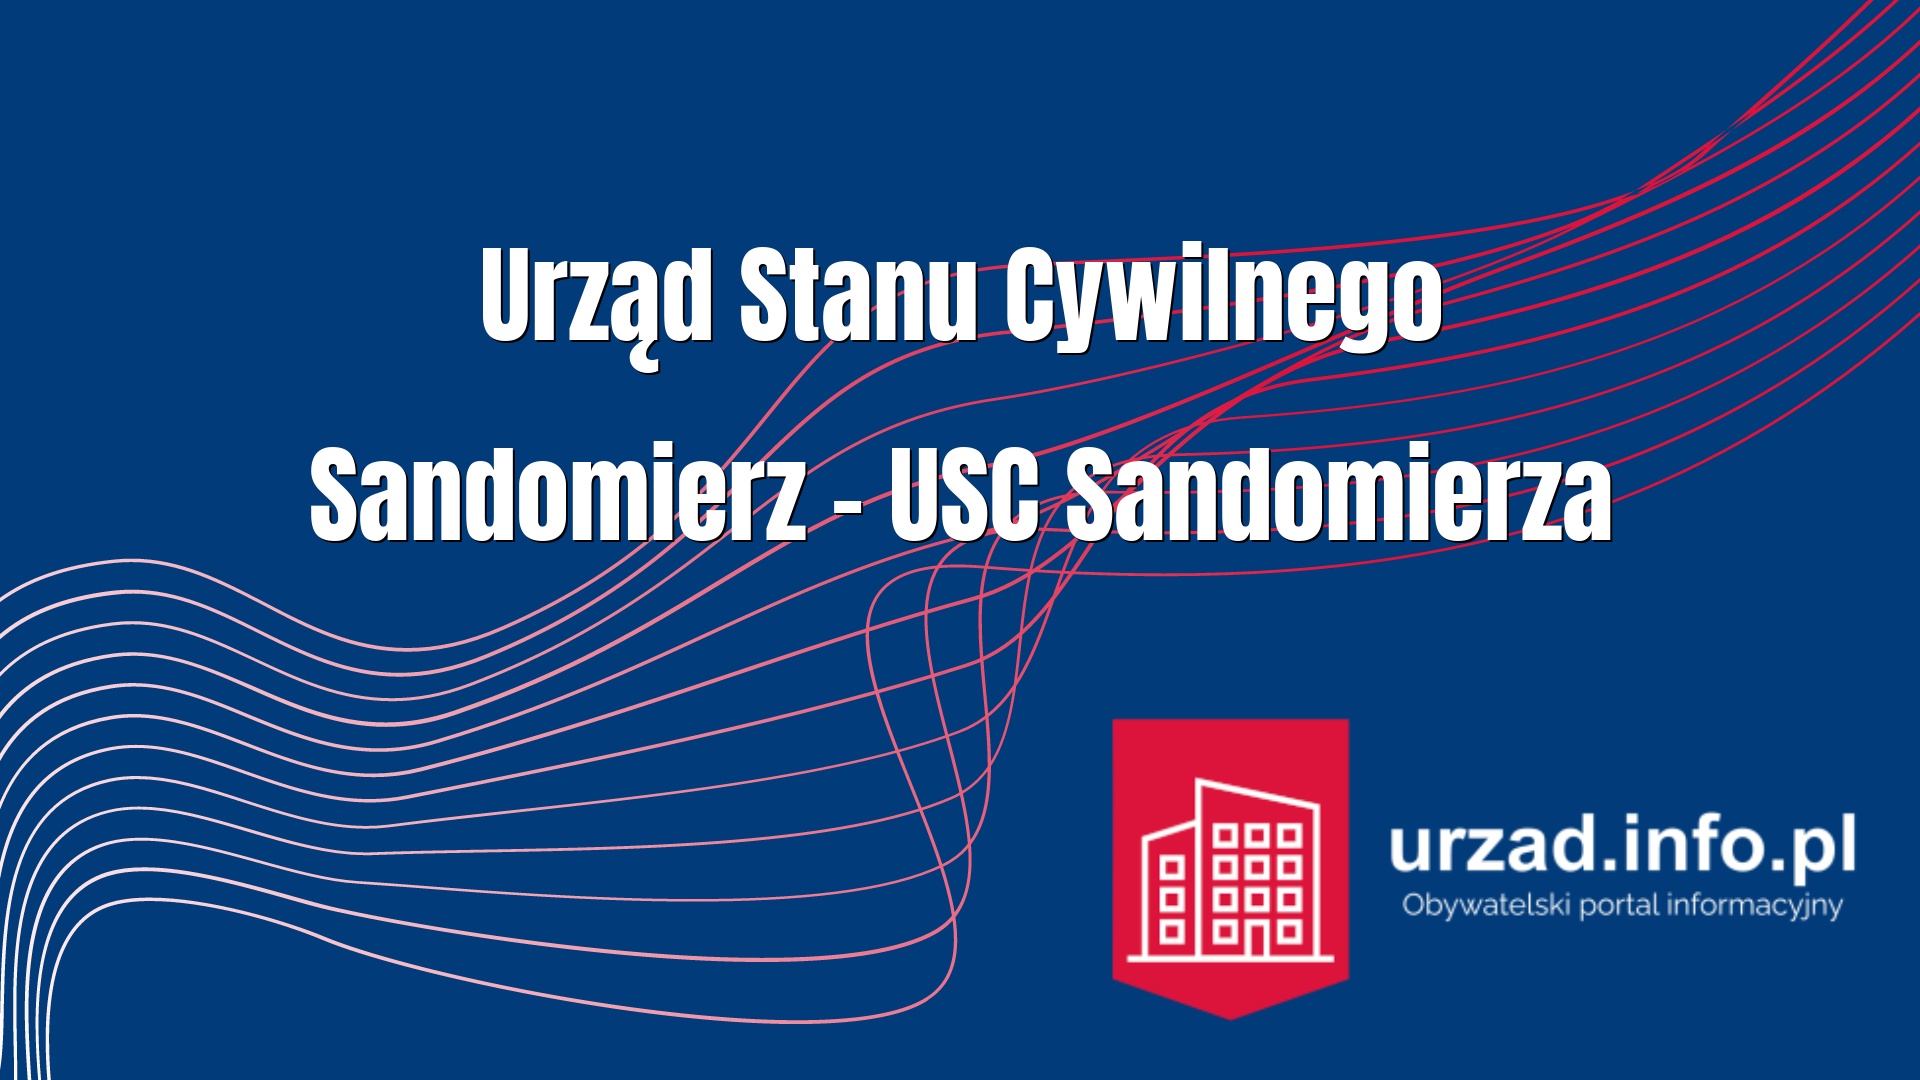 Urząd Stanu Cywilnego Sandomierz – USC Sandomierza